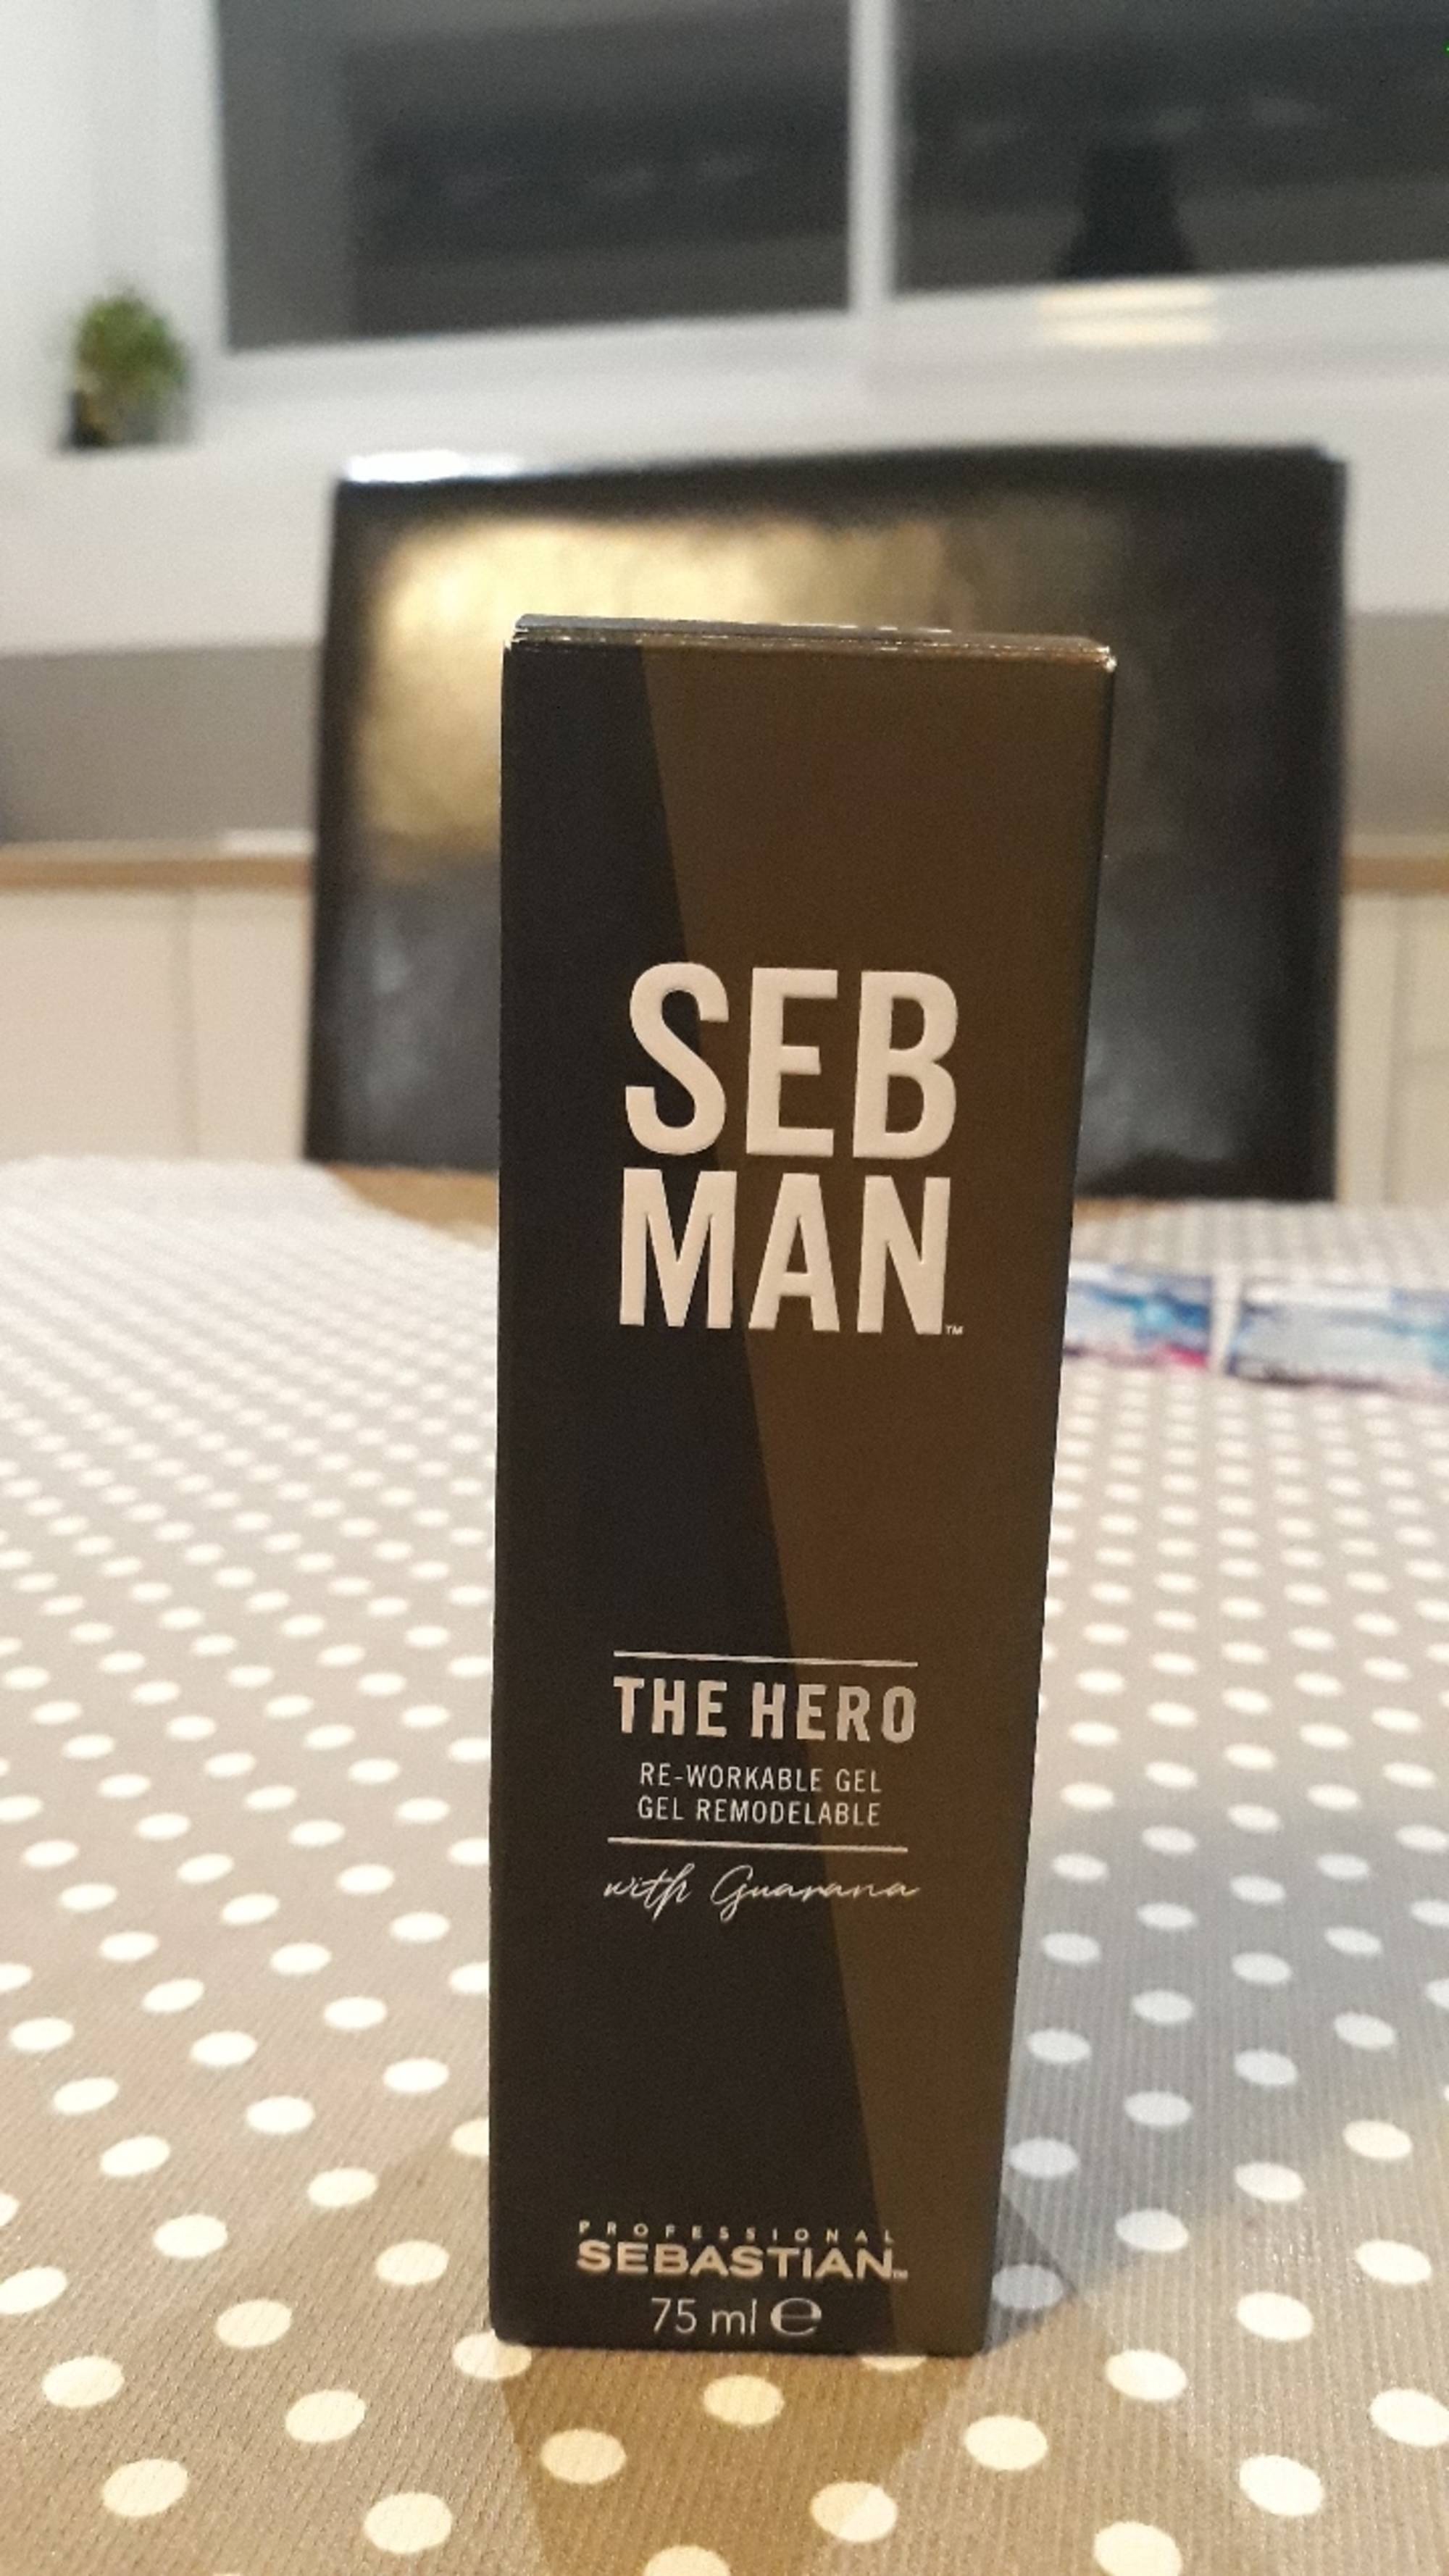 SEBASTIAN PROFESSIONAL - Seb man The hero - Gel remodelable